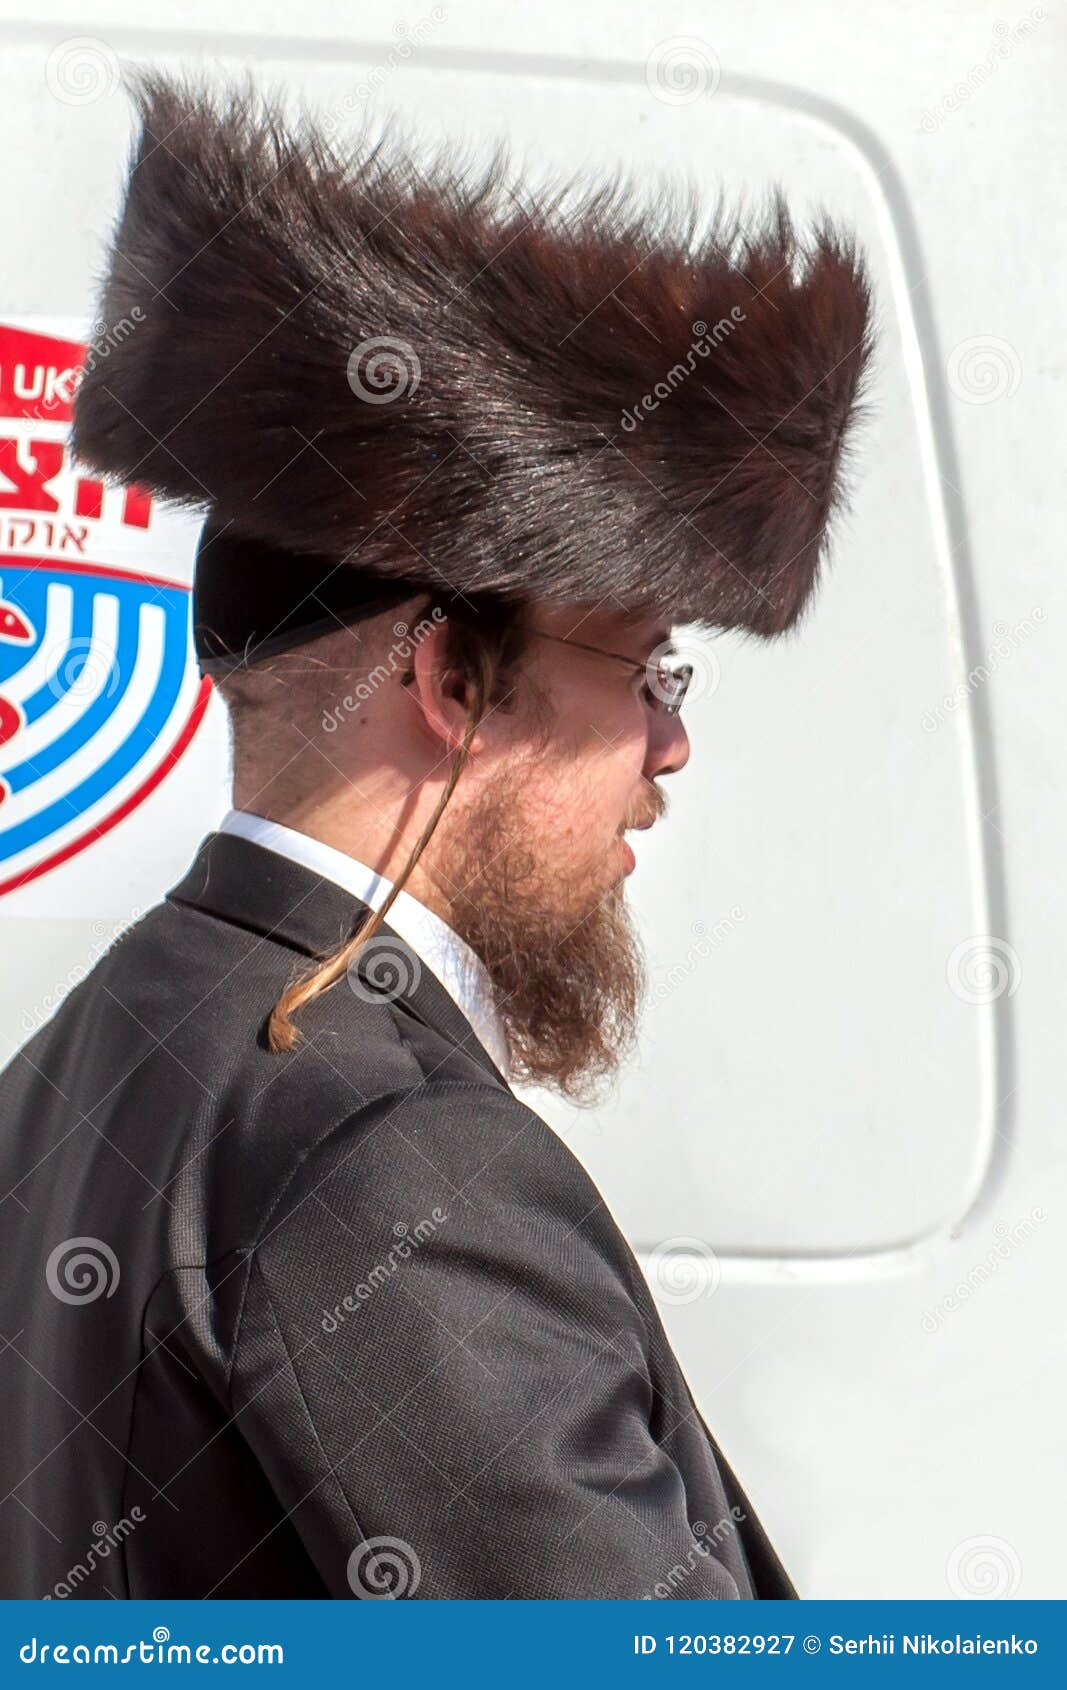 Shtreimel Jewish Hair Hat - BHe